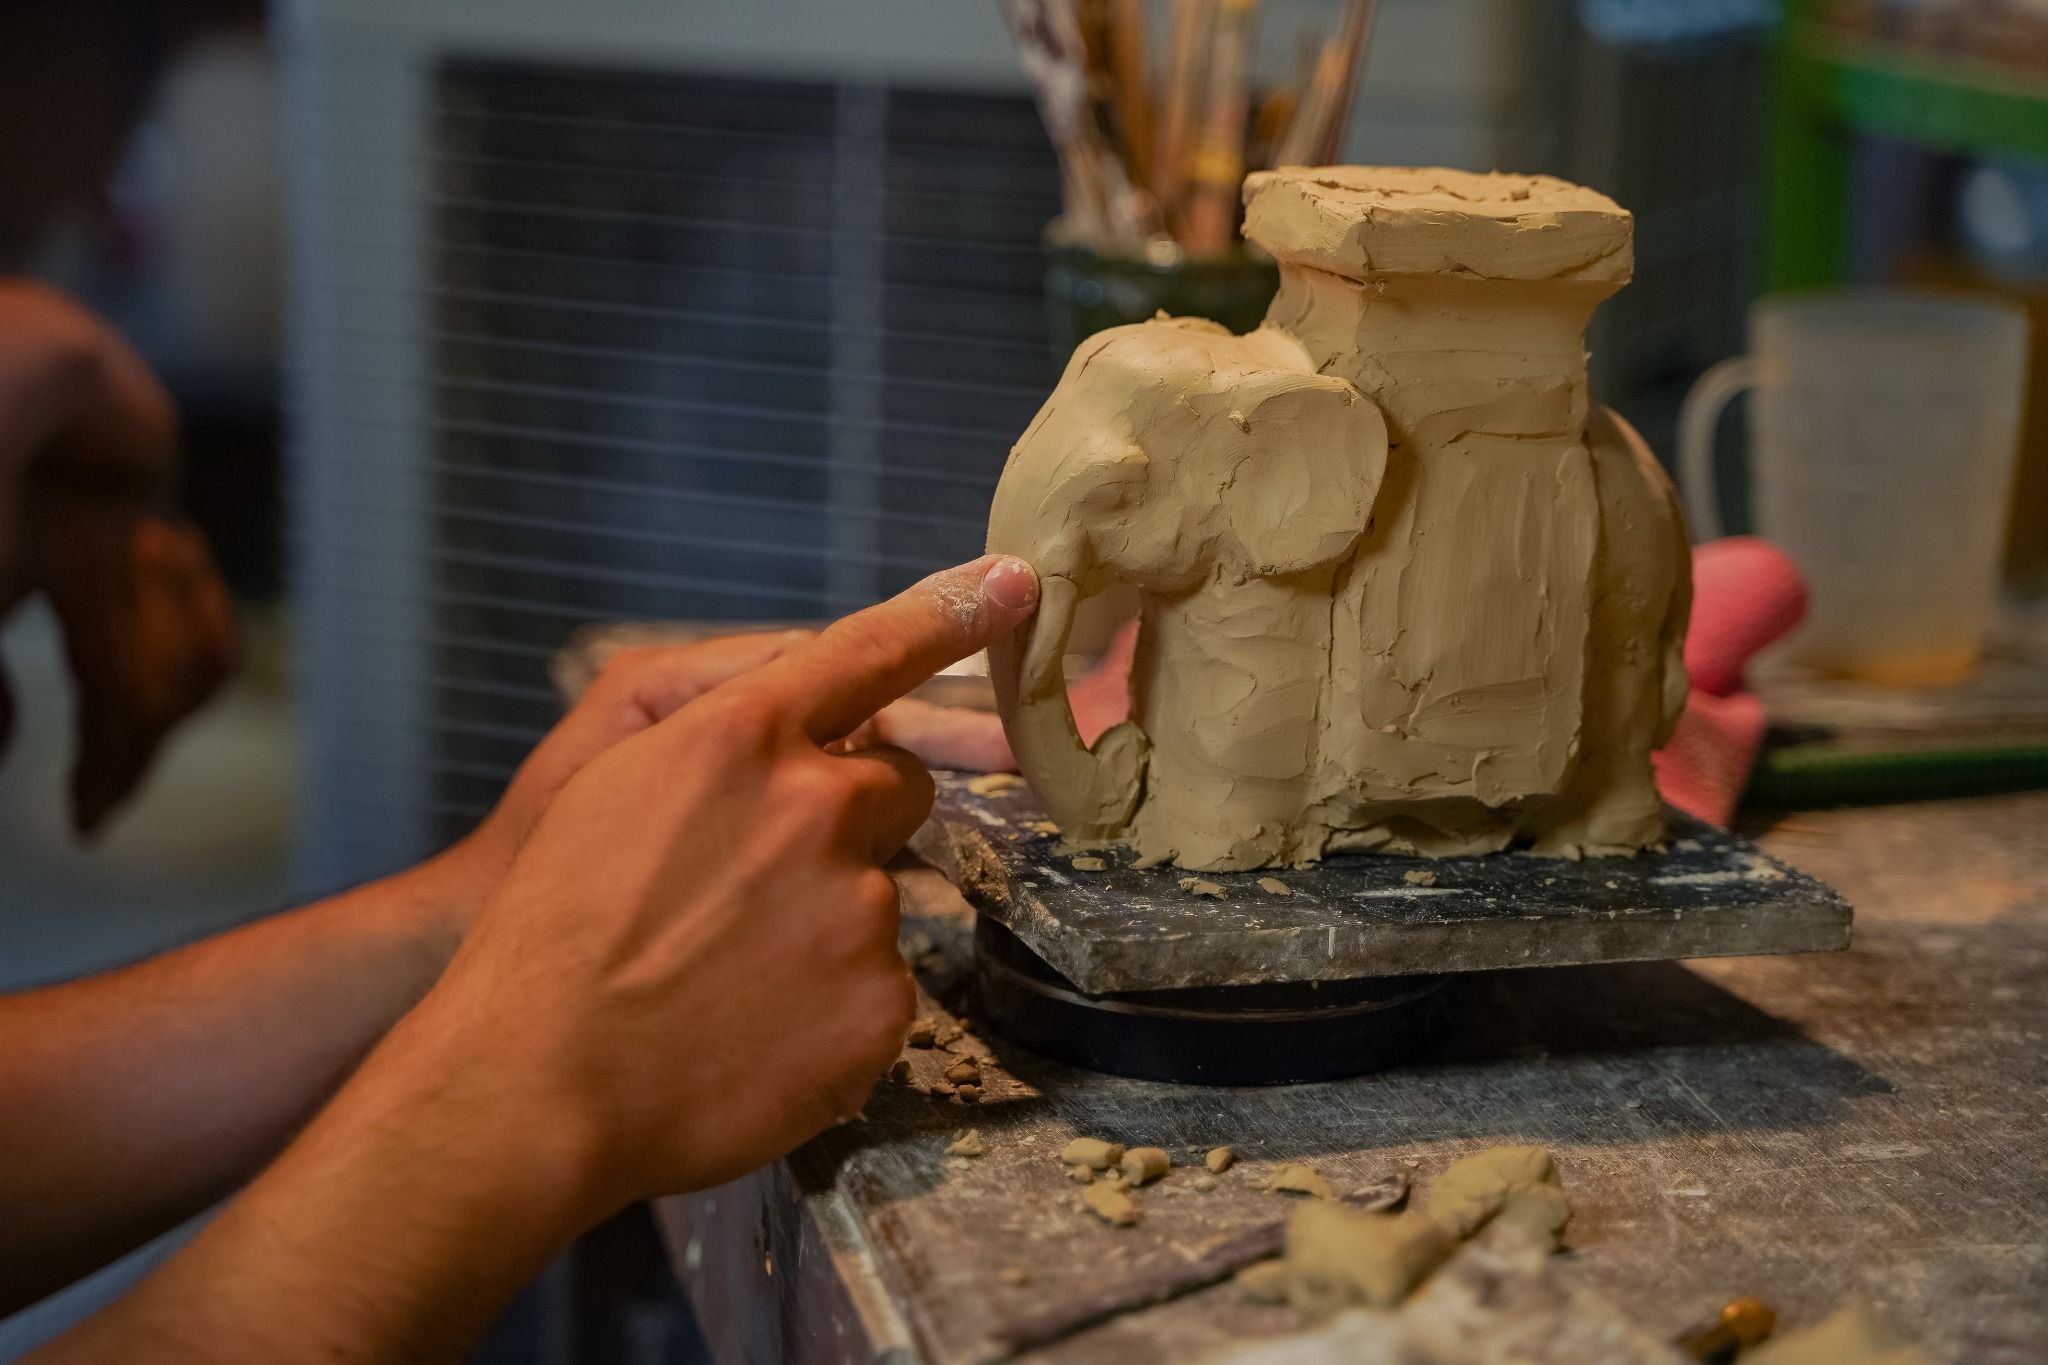  Đôn voi truyền thống, gốm Nam Bộ, size nhỏ không đế, nhiều màu sắc, C15 x R15cm 